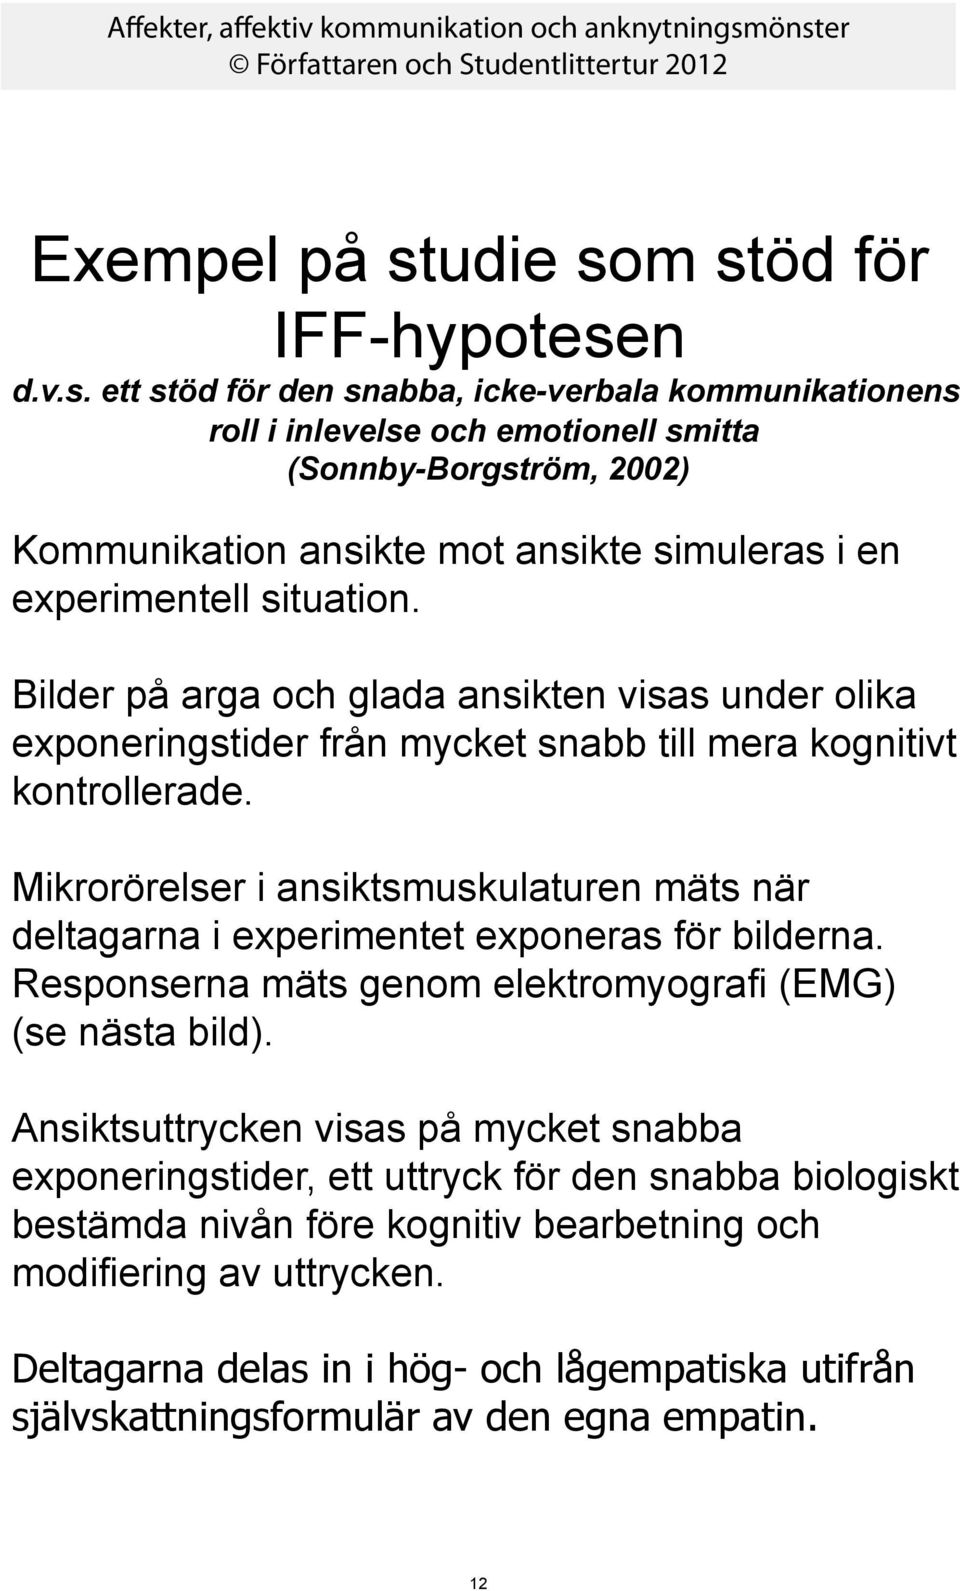 m stöd för IFF-hypotesen d.v.s. ett stöd för den snabba, icke-verbala kommunikationens roll i inlevelse och emotionell smitta (Sonnby-Borgström, 2002) Kommunikation ansikte mot ansikte simuleras i en experimentell situation.